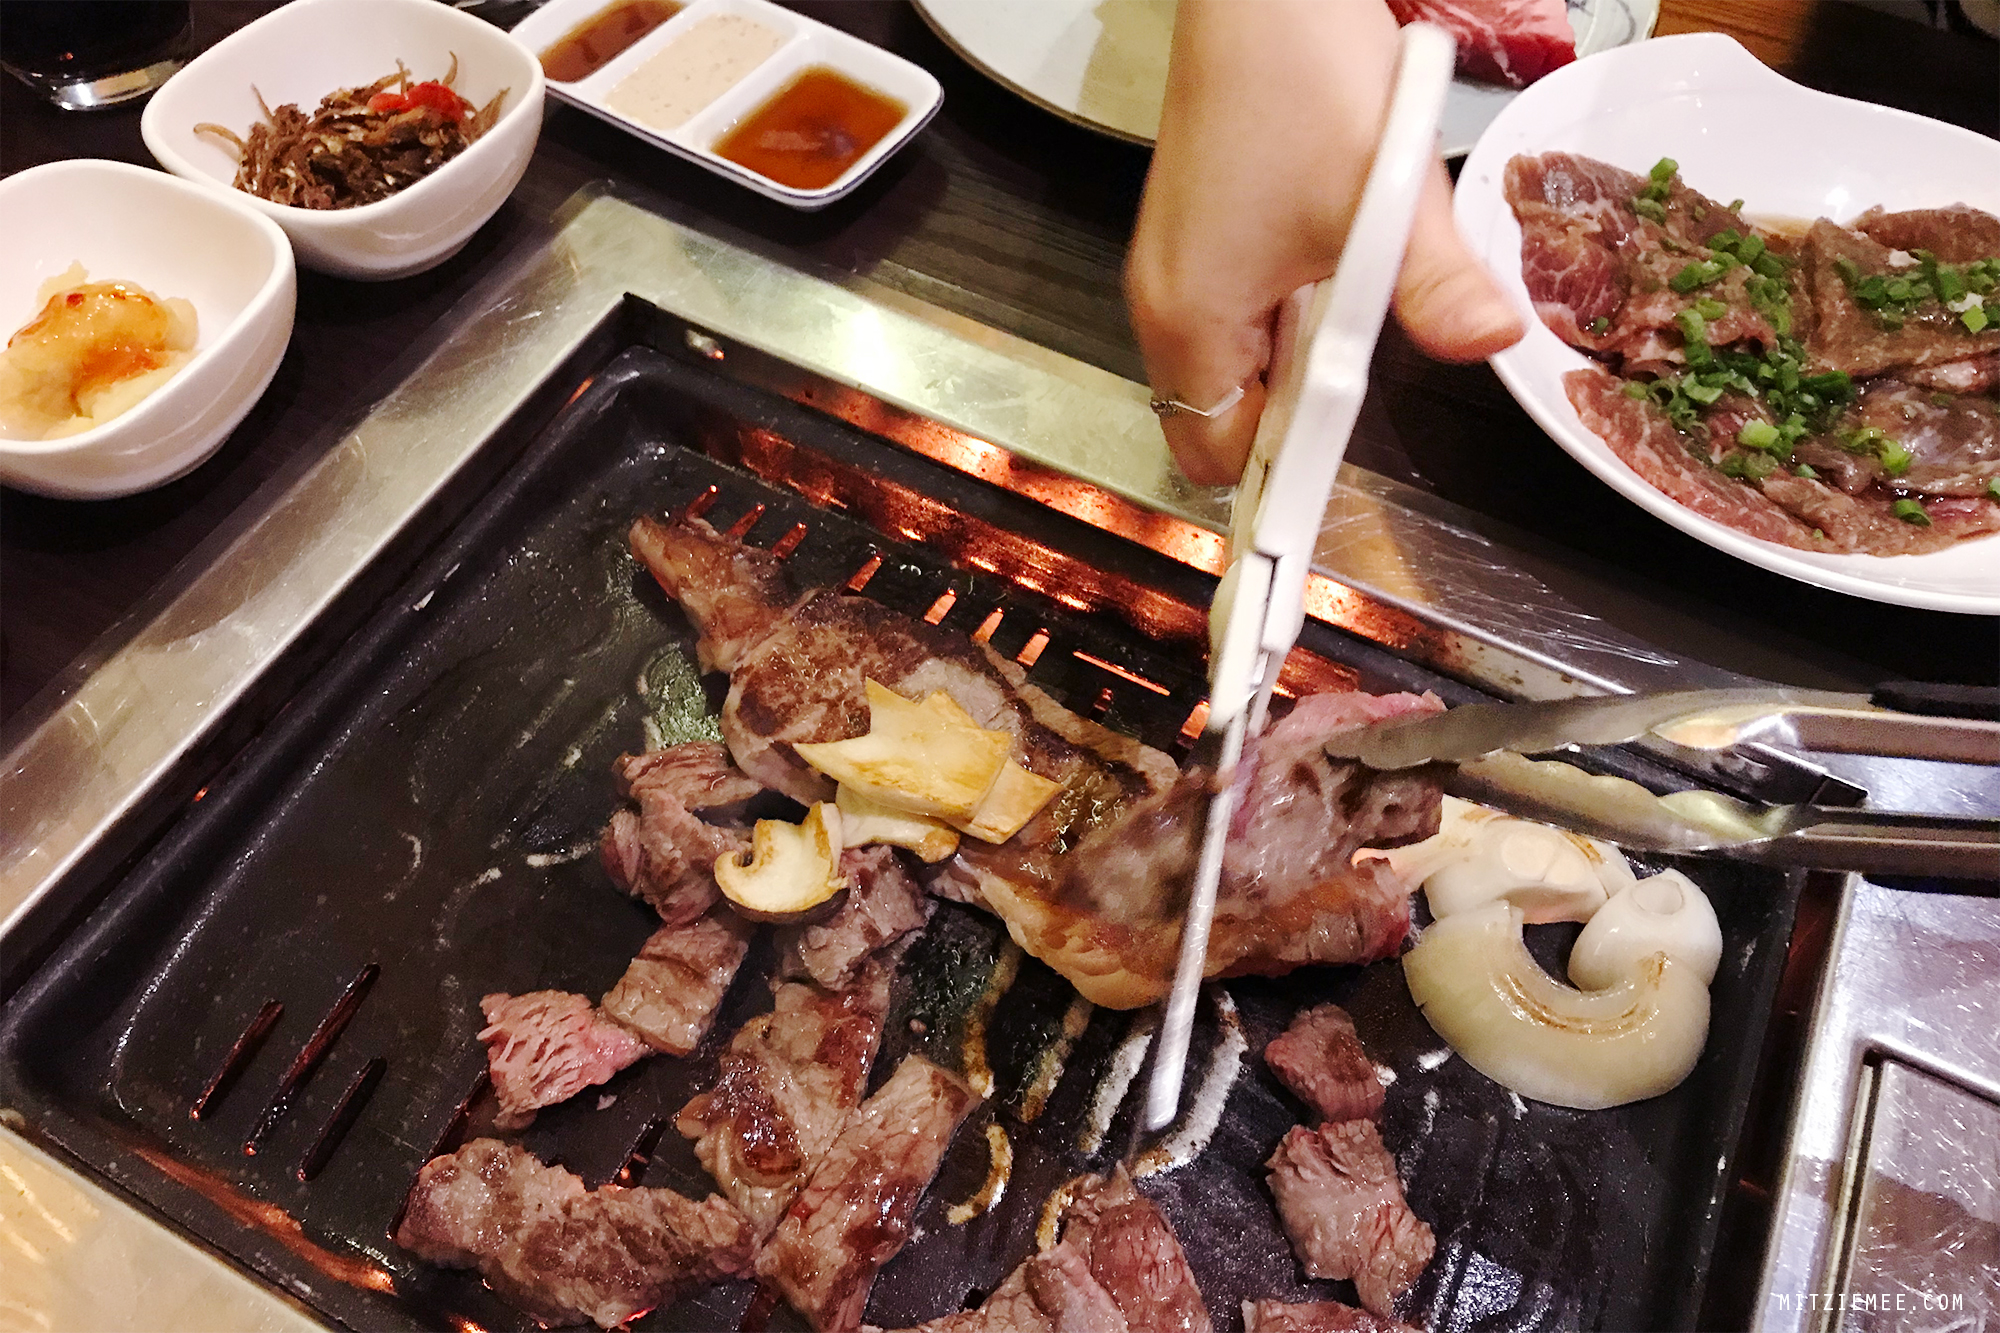 Korean BBQ at Sonamu, Korean restaurant in Dubai